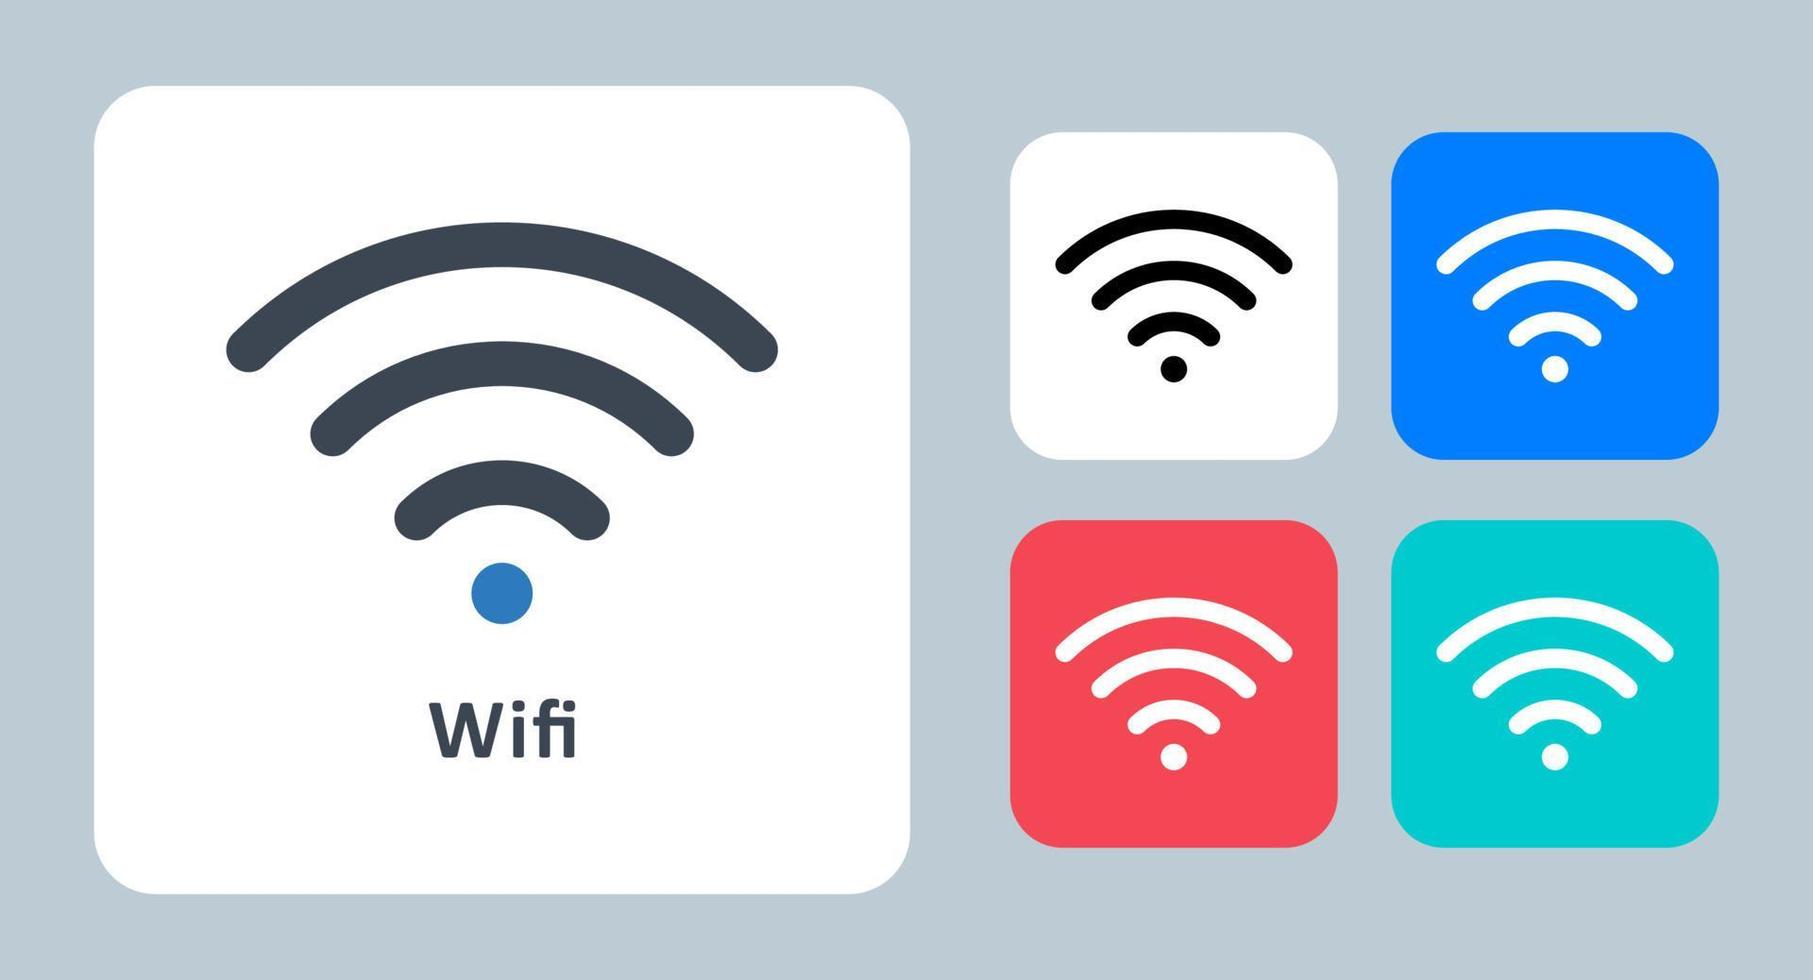 wifi-symbol - vektorillustration. wifi, drahtlos, signal, internet, netzwerk, verbindung, kommunikation, verbinden, linie, umriss, flach, symbole . vektor